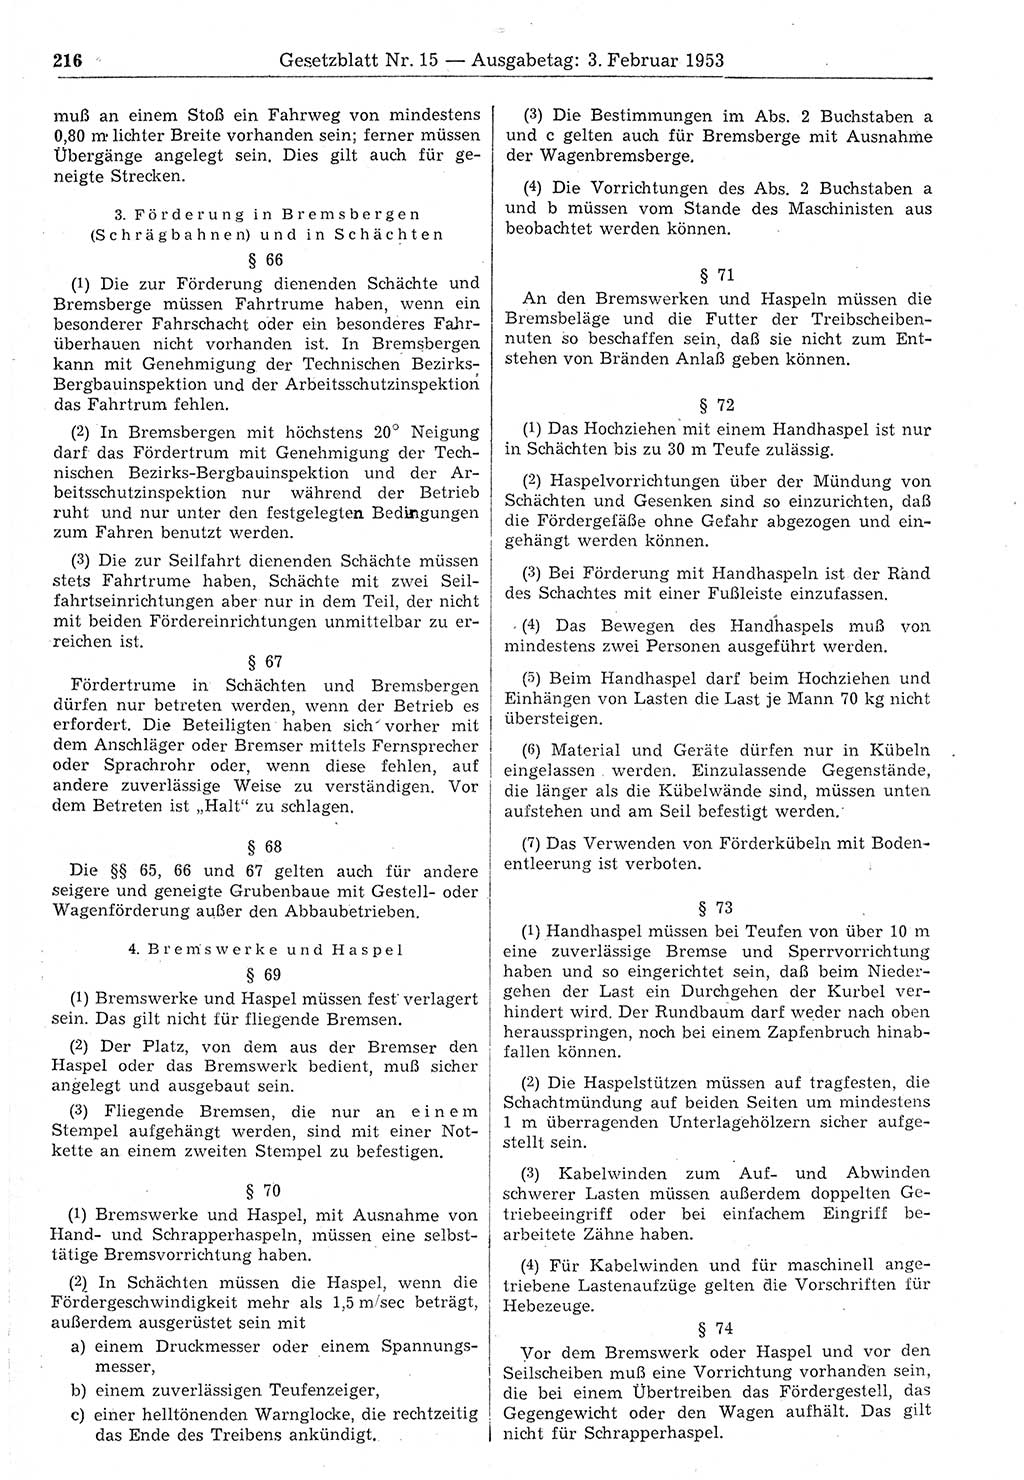 Gesetzblatt (GBl.) der Deutschen Demokratischen Republik (DDR) 1953, Seite 216 (GBl. DDR 1953, S. 216)